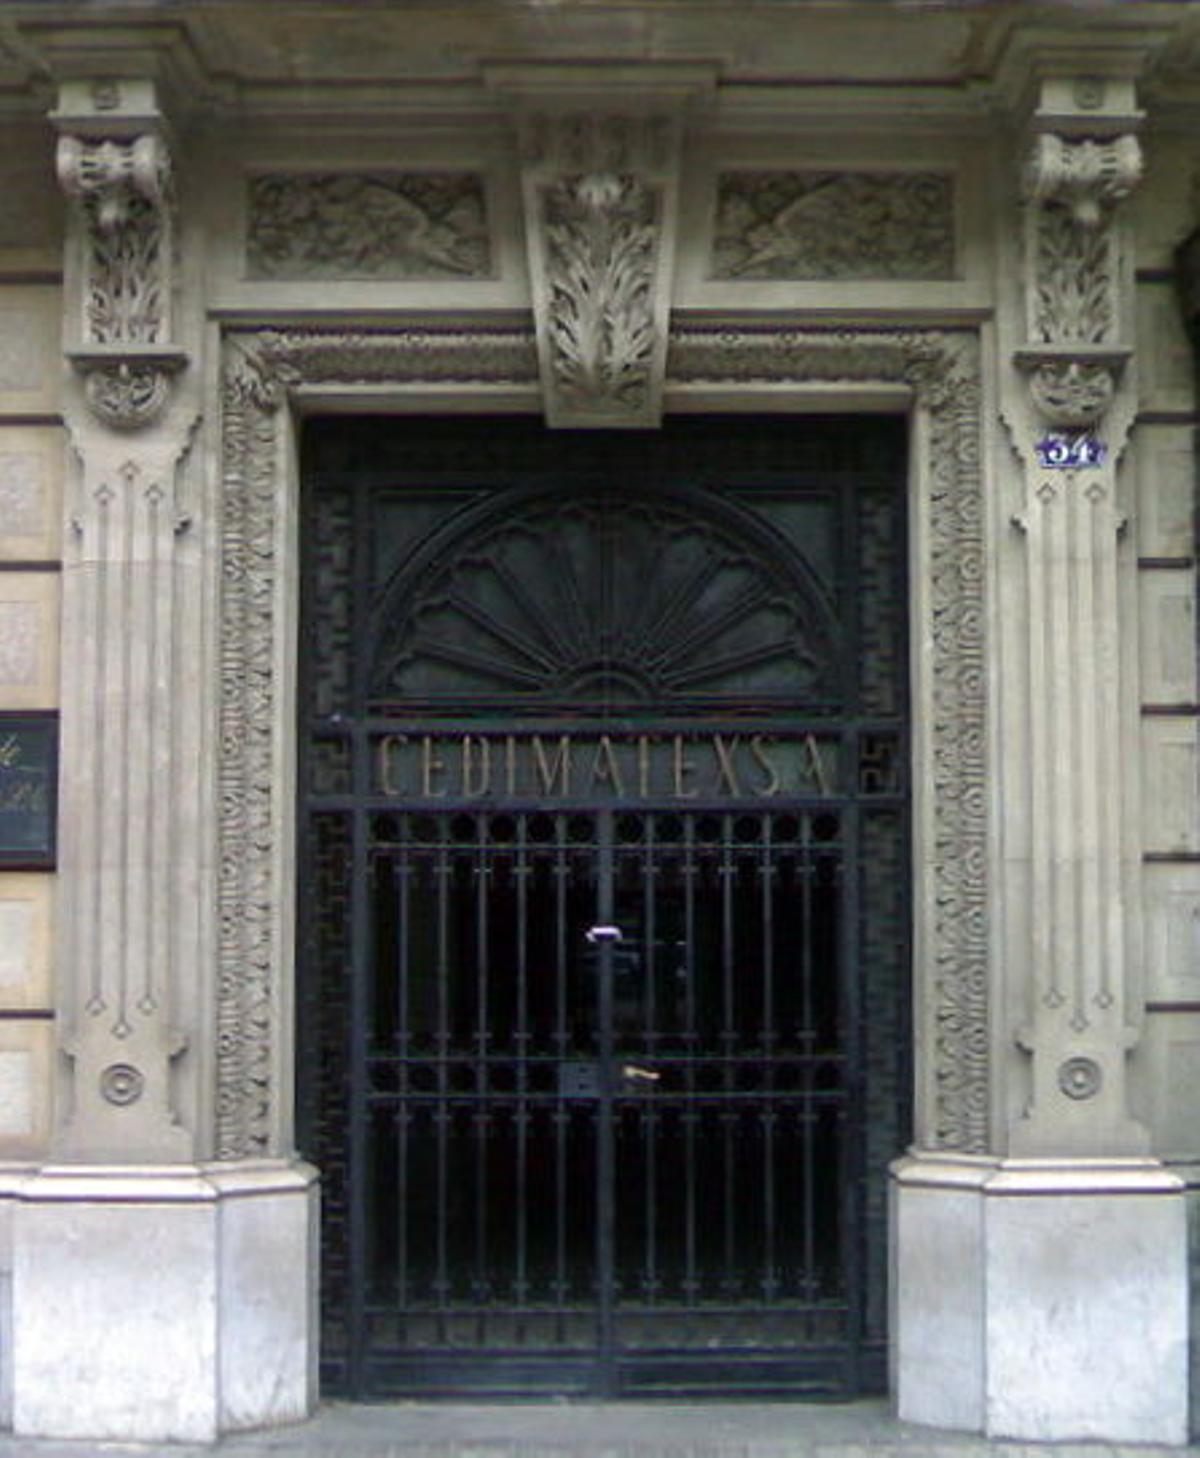 Puerta de la Rambla de Catalunya, 34, donde se rodó '[REC]'